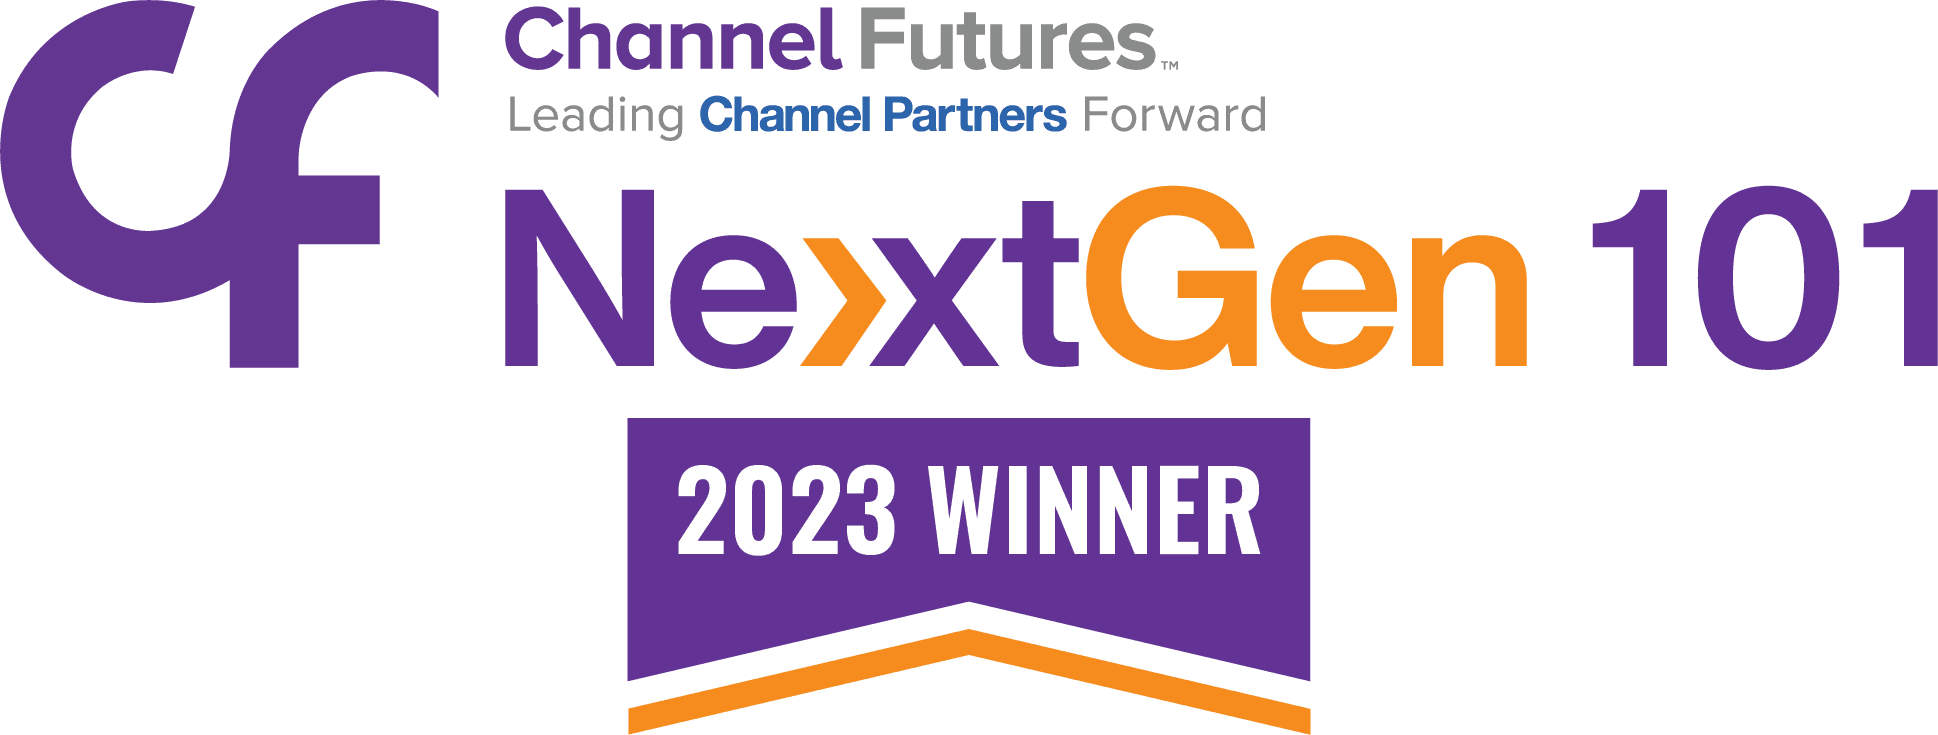 IT services Austin Winner of Channel Futures NextGen 1010.